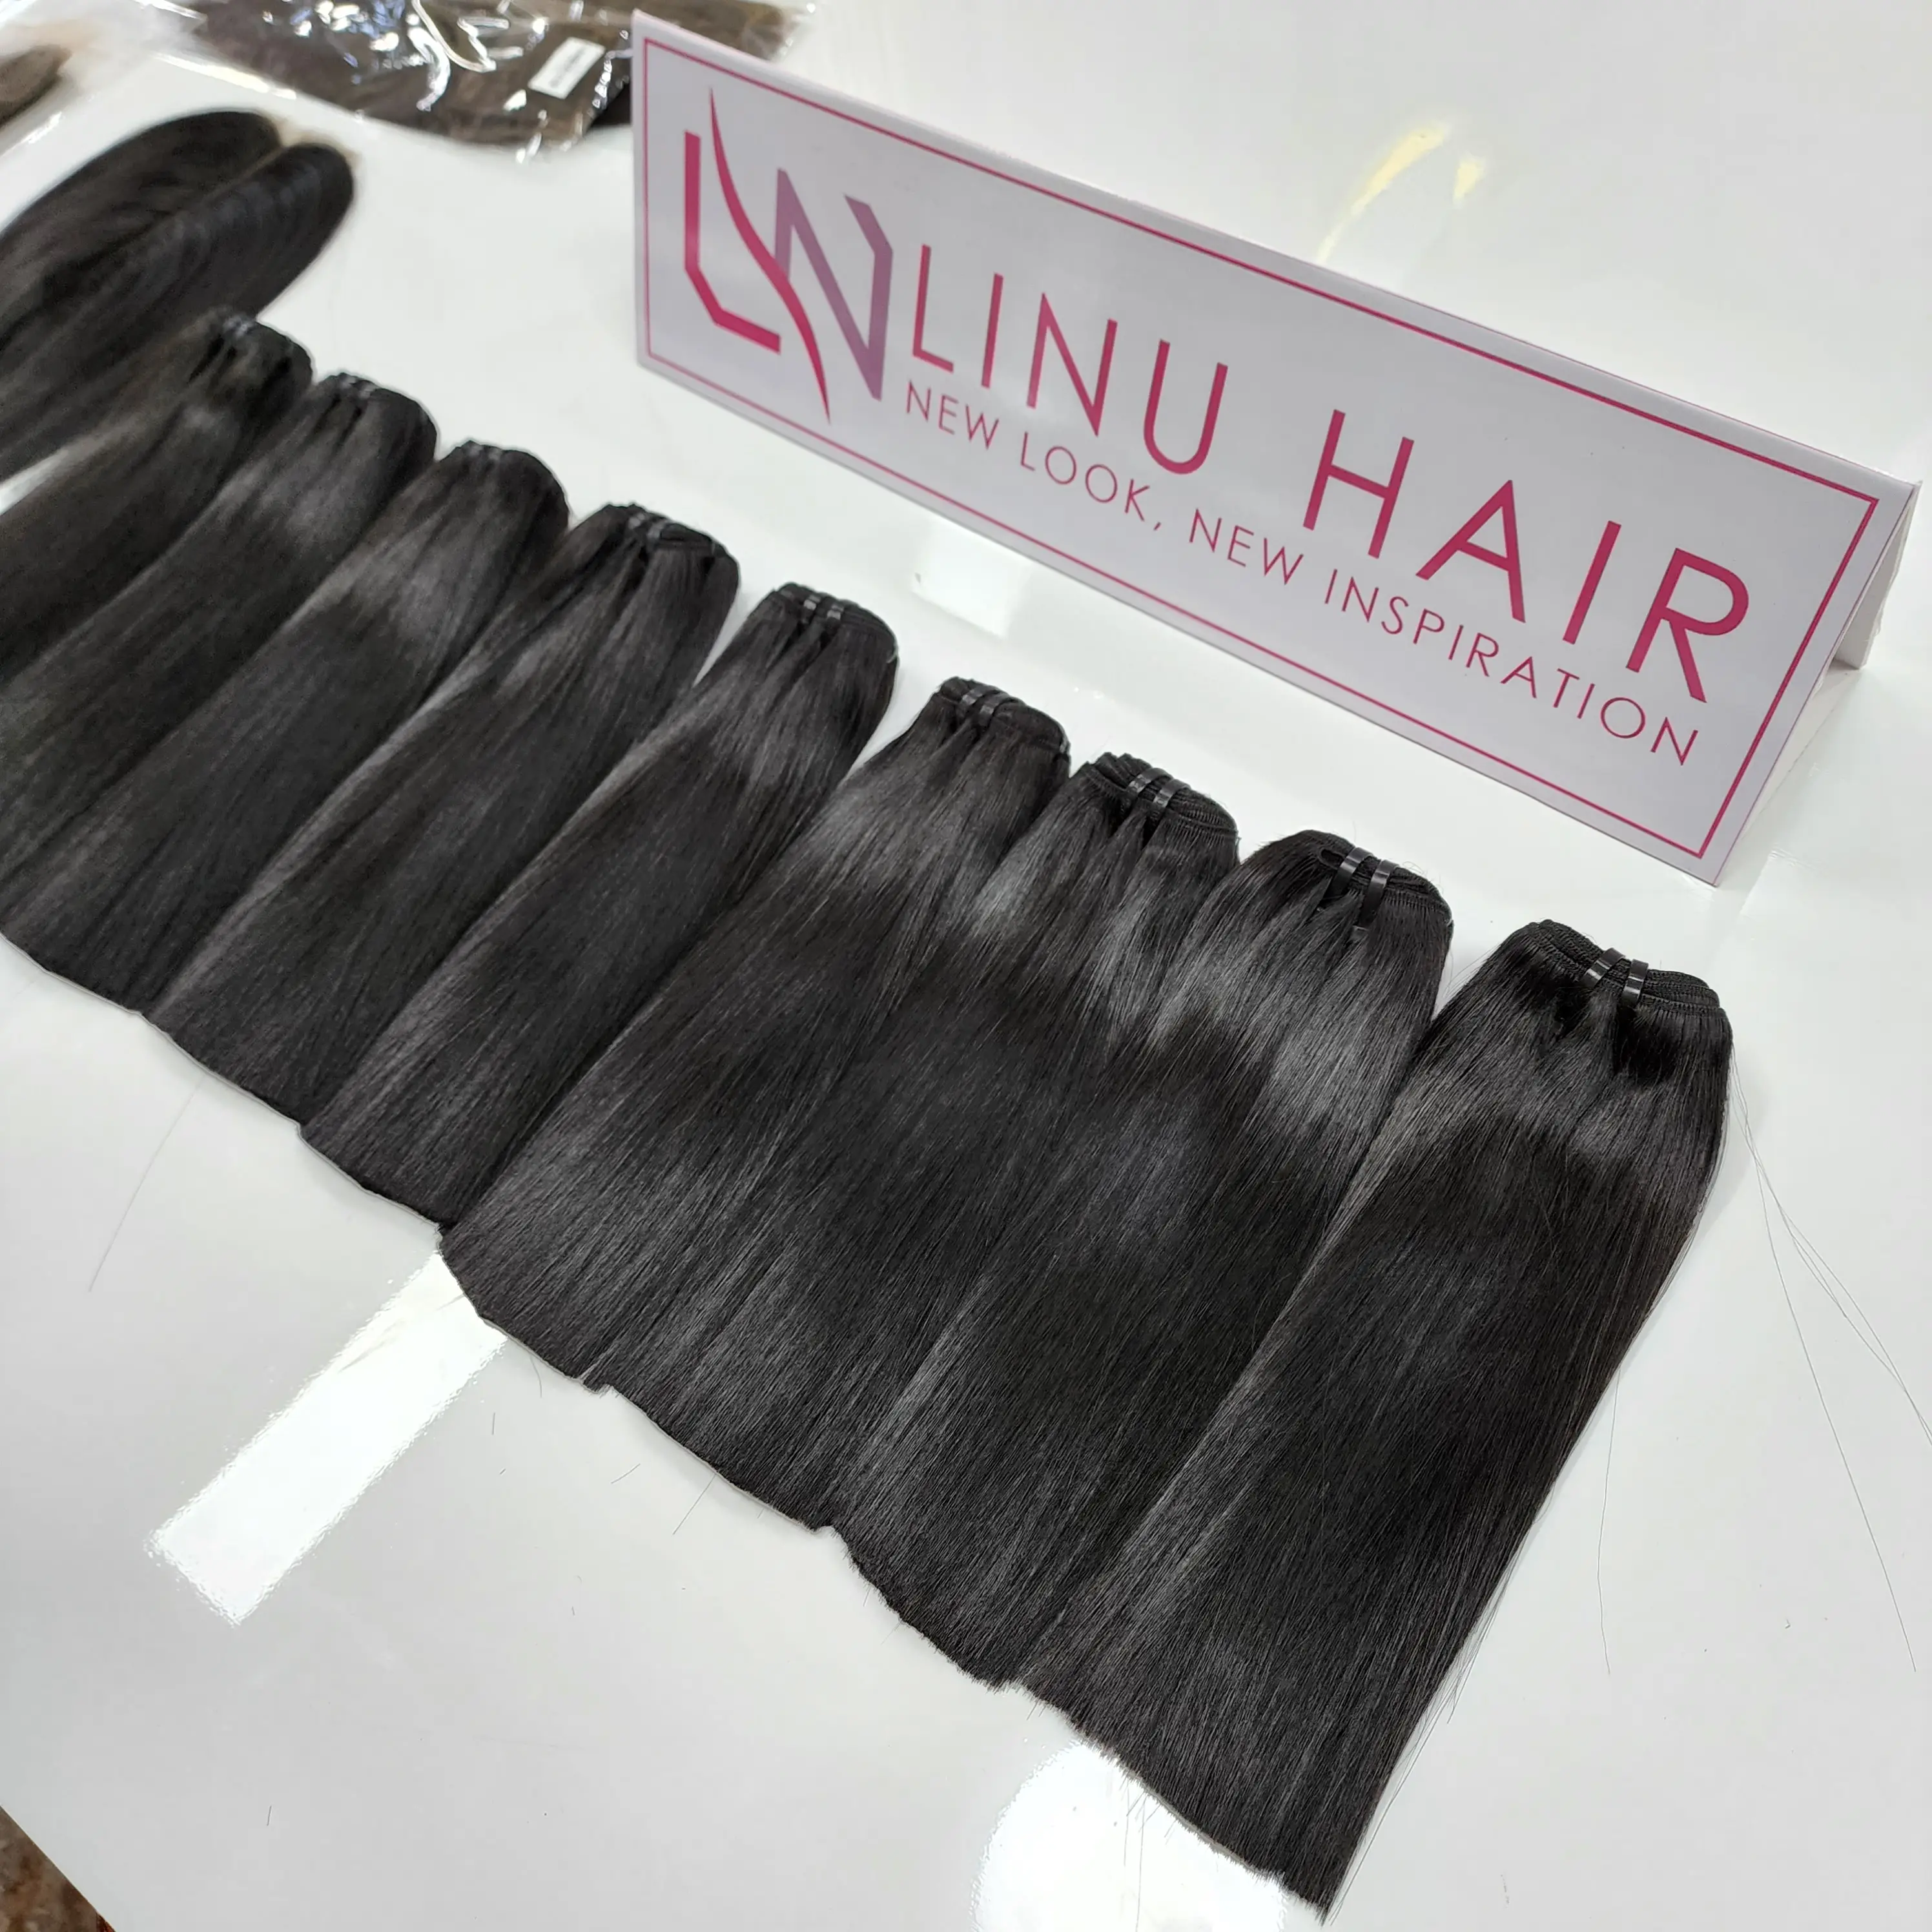 Необработанные вьетнамские волосы, необработанные, прямые, выровненные, необработанные волосы, бесплатный образец, пучок волос для всех заказов